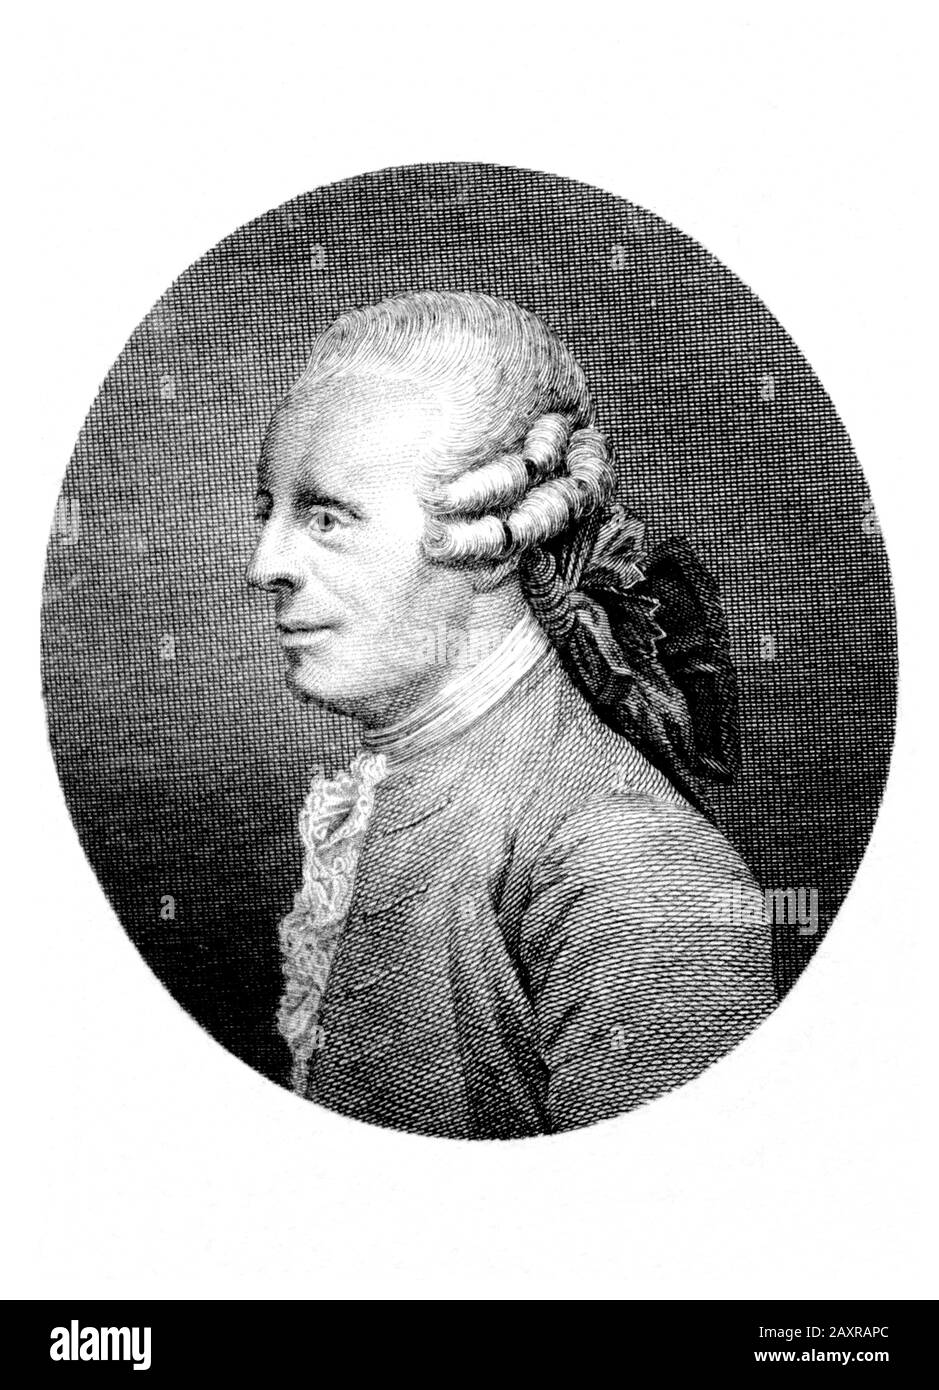 1783 CA , FRANCE :le célèbre mathématicien français , mécaniste , physicien , philosophe et théoricien de la musique JEAN LE ROND d'ALEMBERT ( 1717 – 1783 ) . Portrait gravé en 1789 par imprimante française non-entifiée . Jusqu'en 1759, il est également co-rédacteur en chef avec Denis Diderot de l'Encyclopédie. - ALEMBERT - ILLUMINISTA - ILLUMINISM - ENCICLOPEDIA - ENCICLOPEDISTA - ILLUMNINISMO - ILLUMINISM - FILOSOFO - FILOSOFIA - PHILOSOPHIE - perrucca - col - coletto - profilo - profil - incisione - gravure - illustratif - illustratif - Dalembert - Archibert - Alembert - Alembert - Alembert - Alembert - Alembert - Alembert - Alembert - Alembert - Alembert - Illetto Banque D'Images